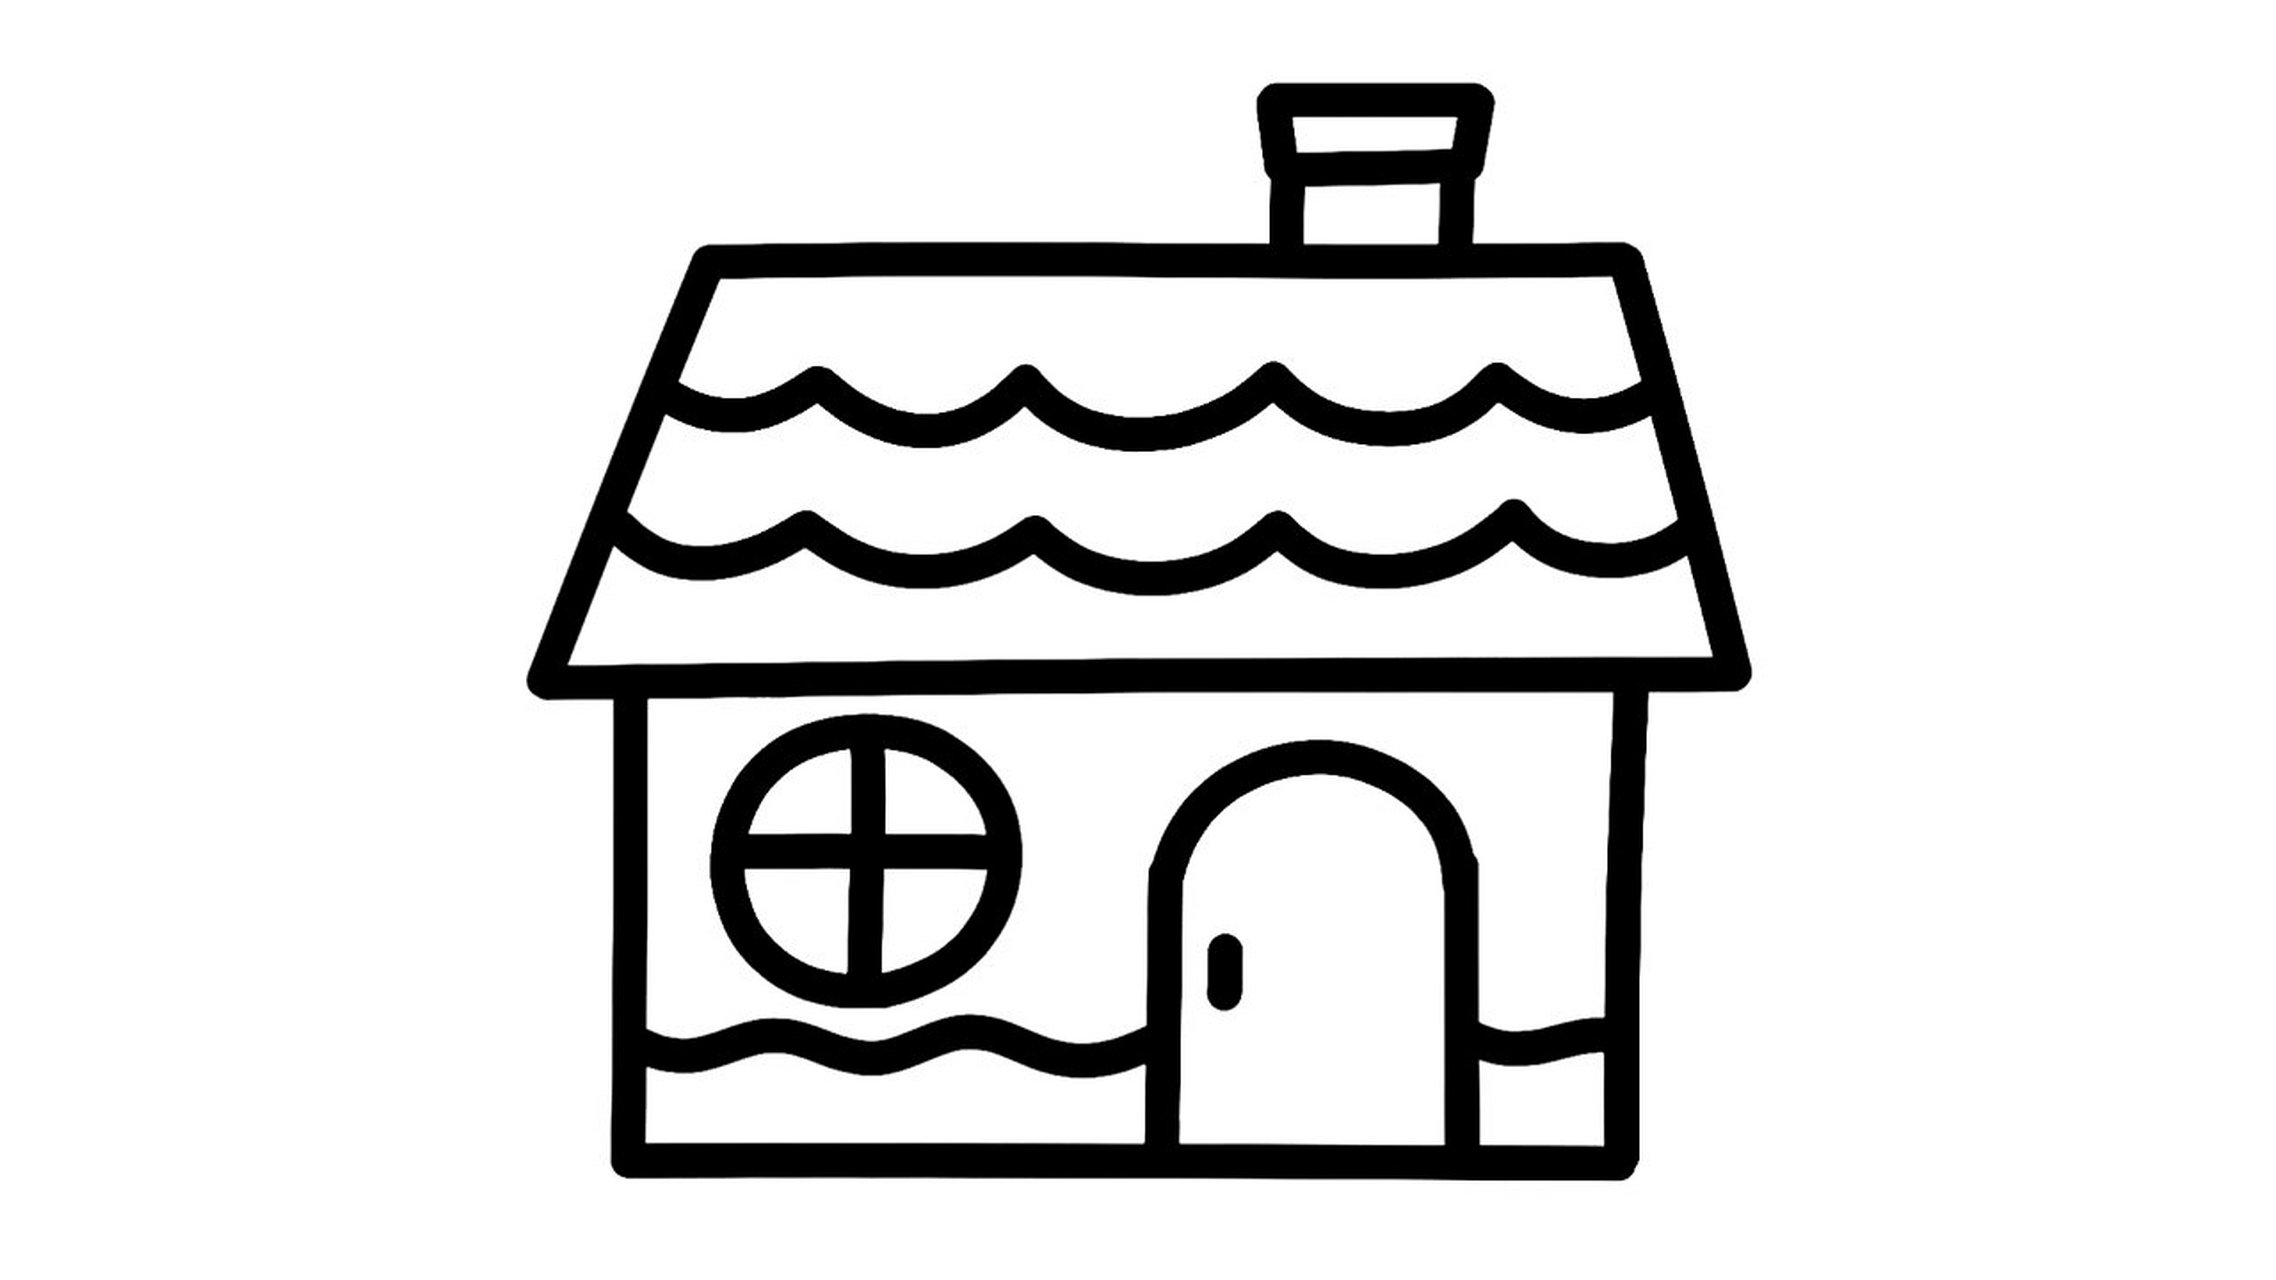 简笔画简单房子图片